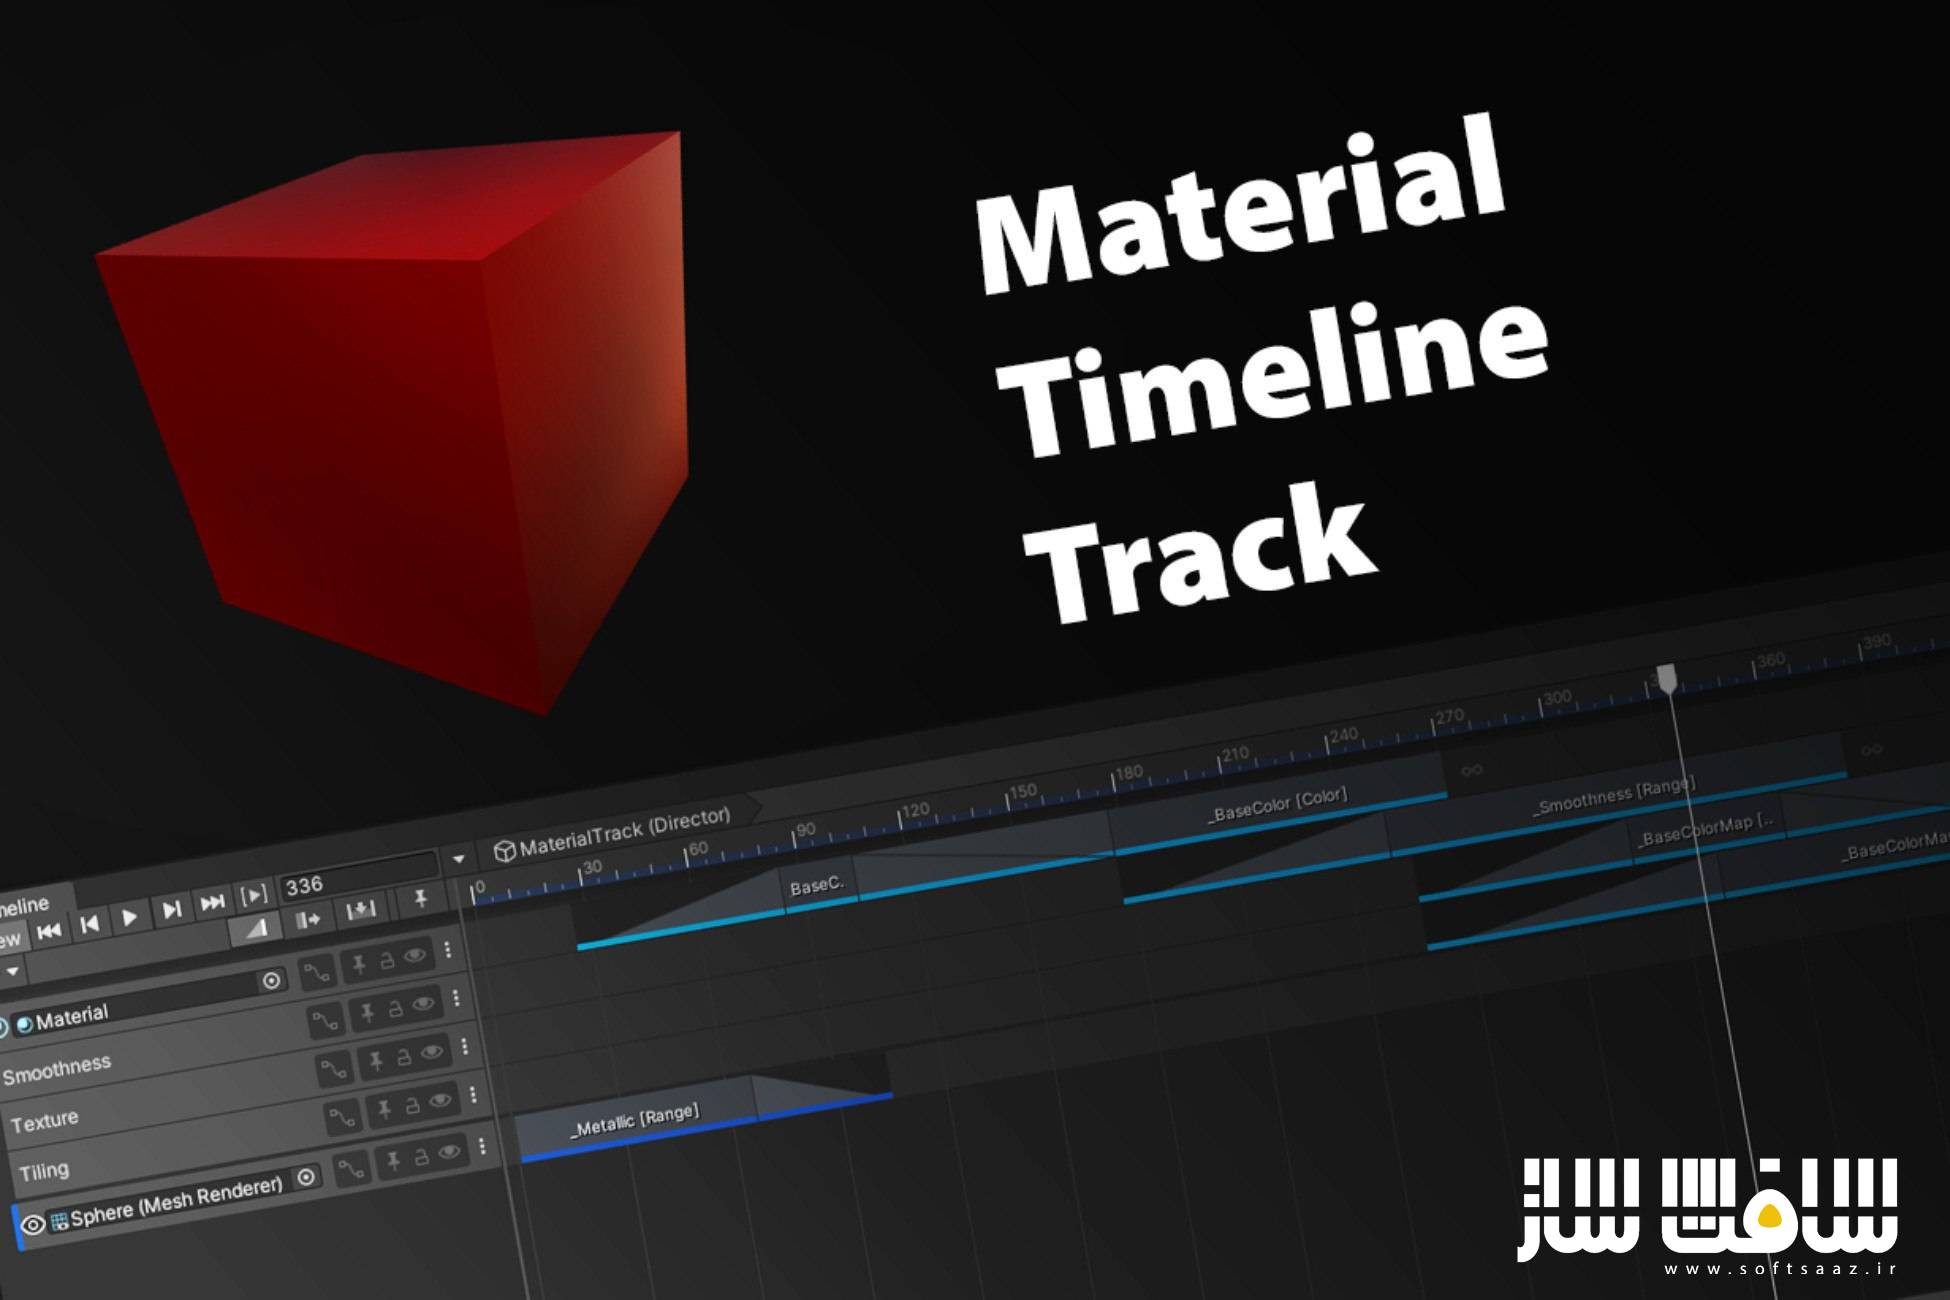 دانلود پروژه Material Timeline Track v1.0 برای یونیتی